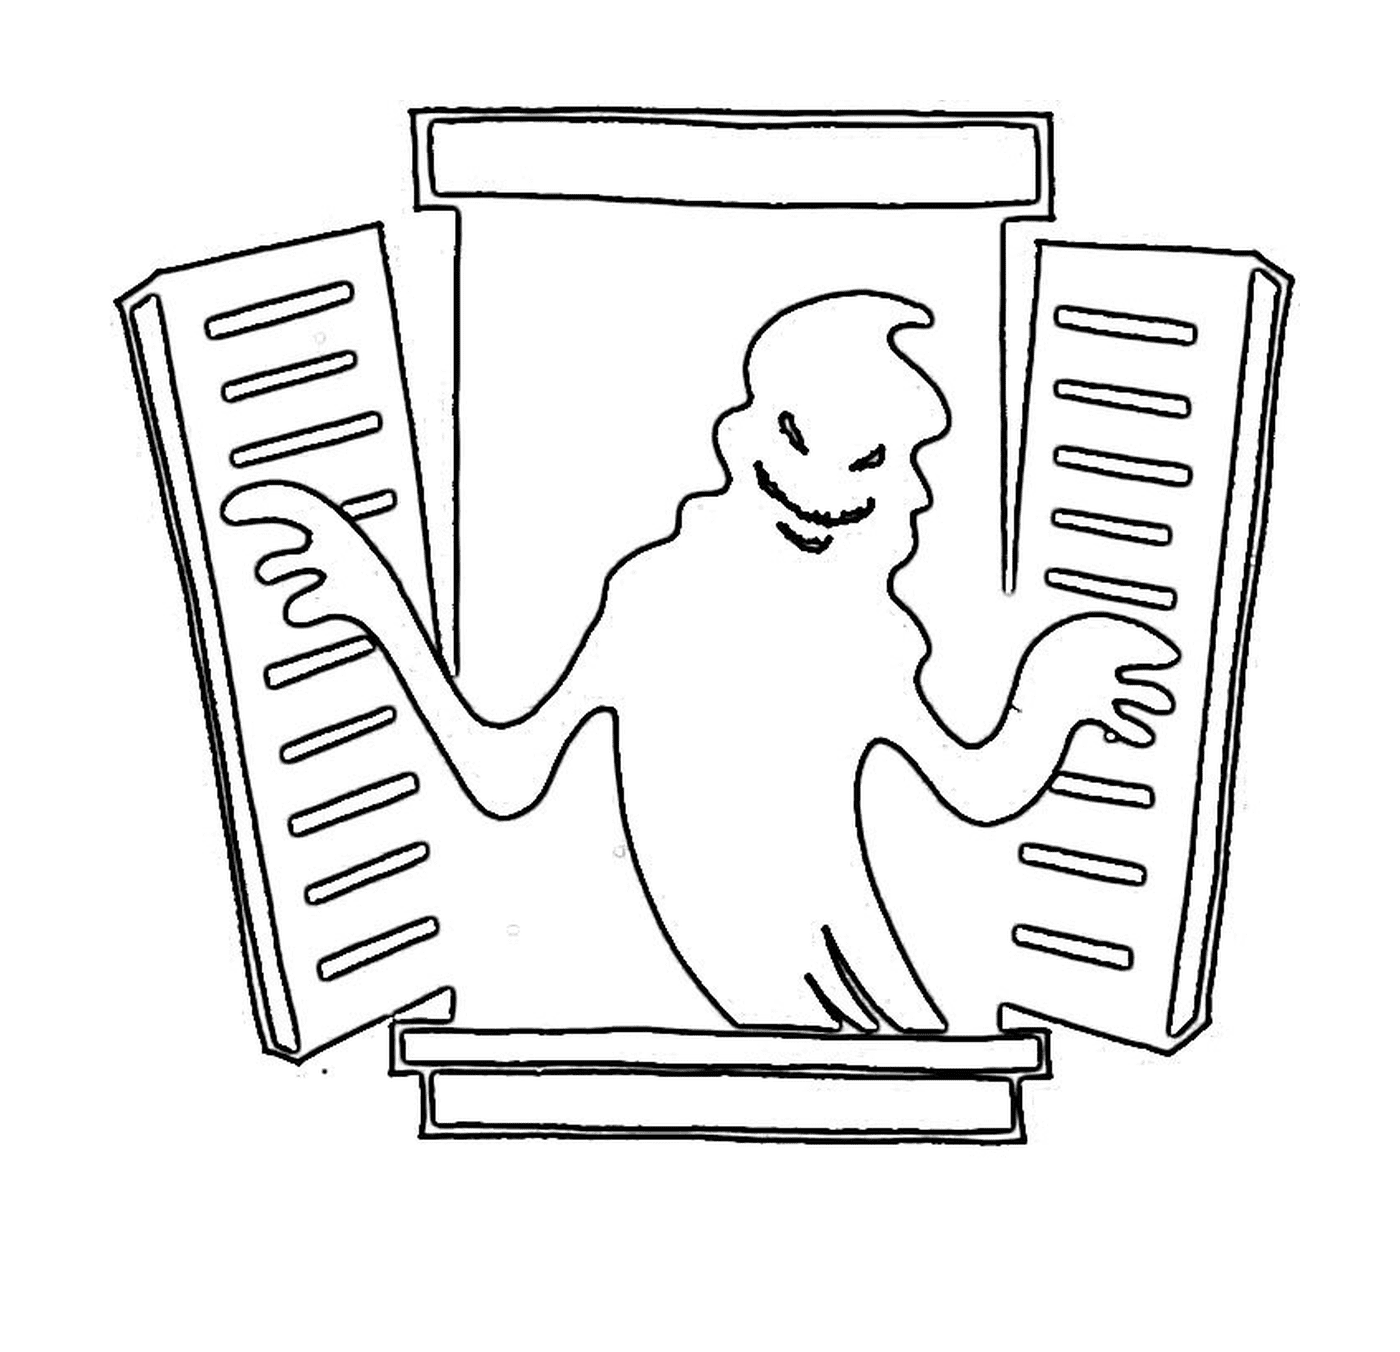  Fantasma saindo de uma janela 